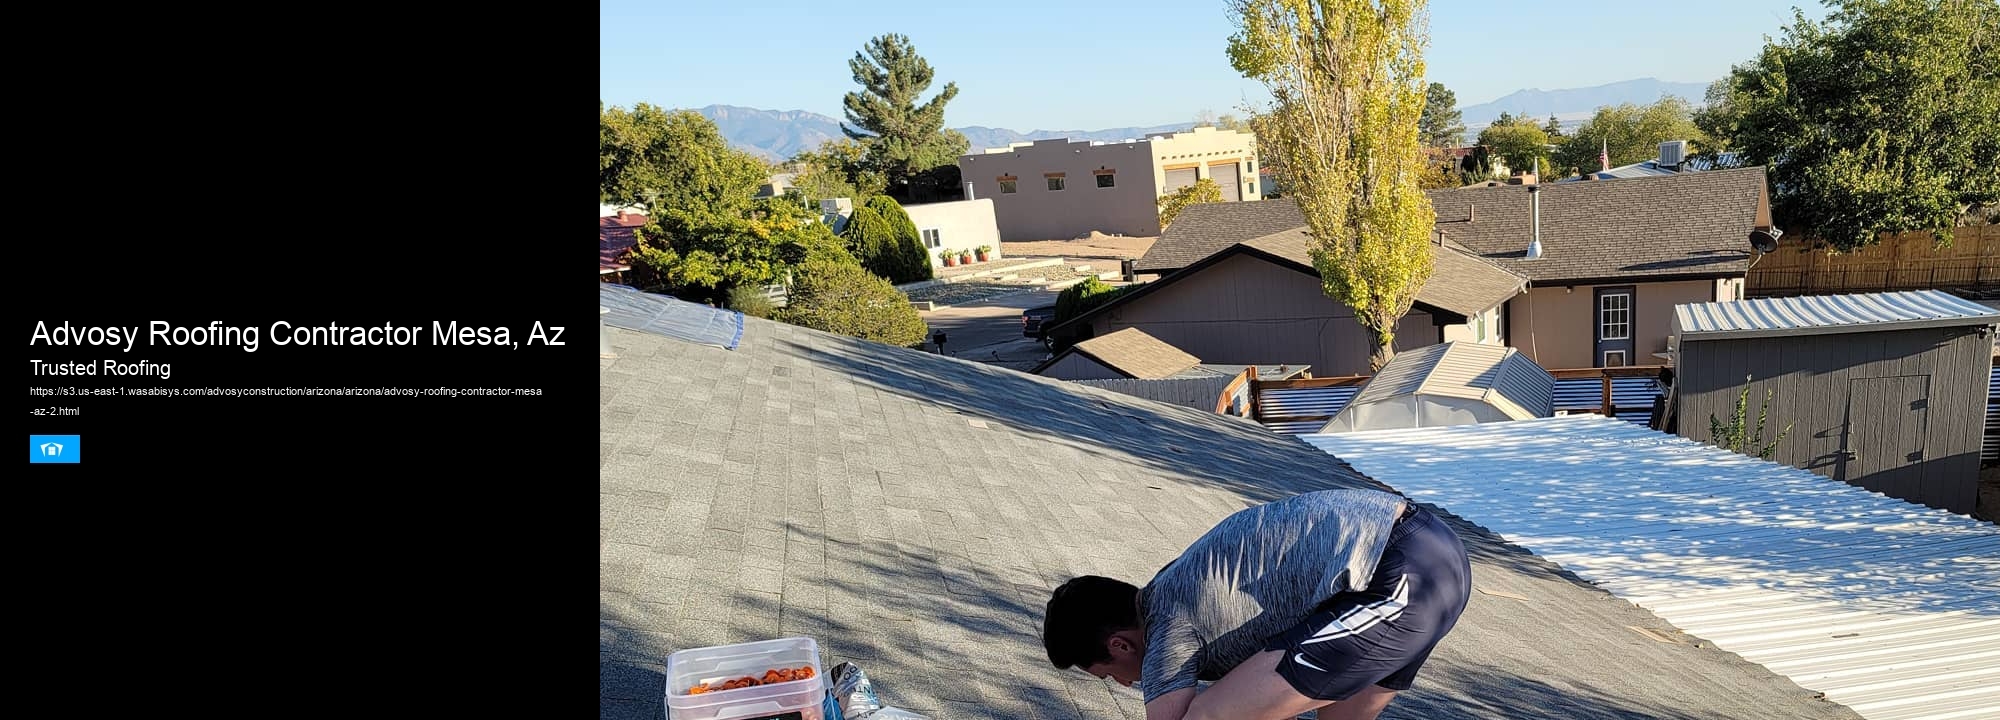 Advosy Roofing Contractor Mesa, Az